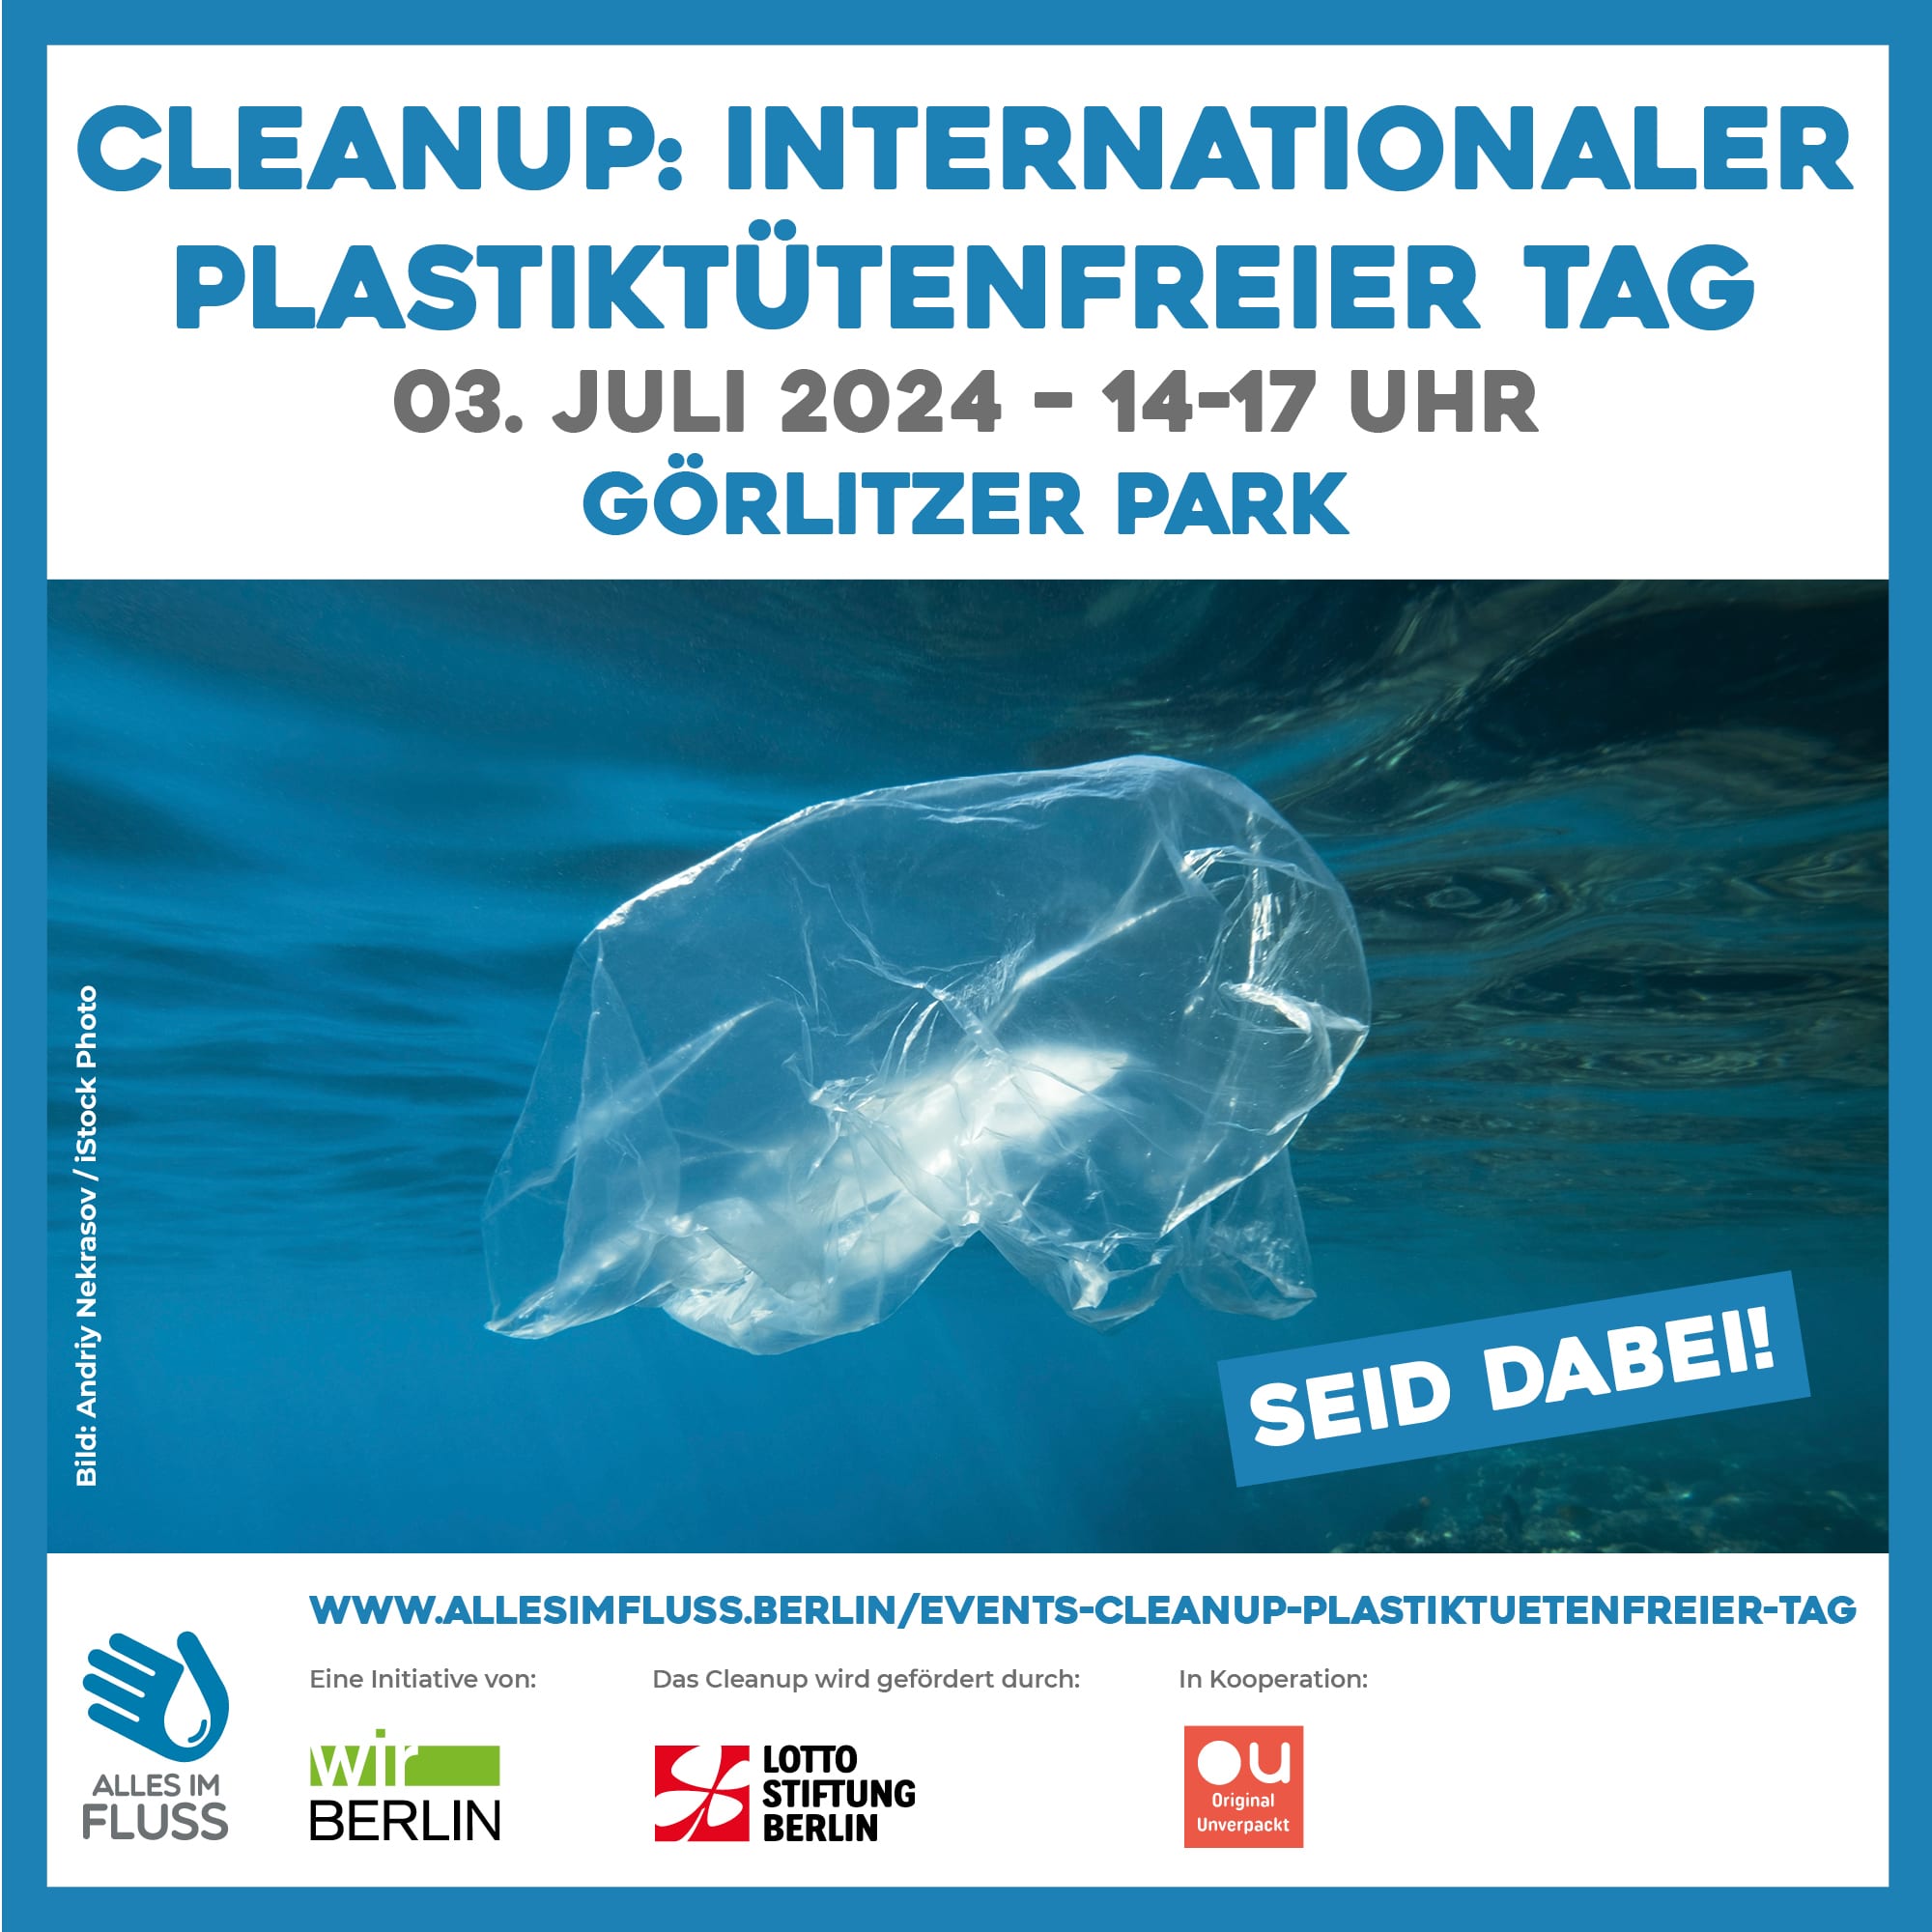 Event-Grafik mit Plastiktüte im Meer zum Cleanup am Internationalen Plastiktütenfreien Tag am 3. Juli